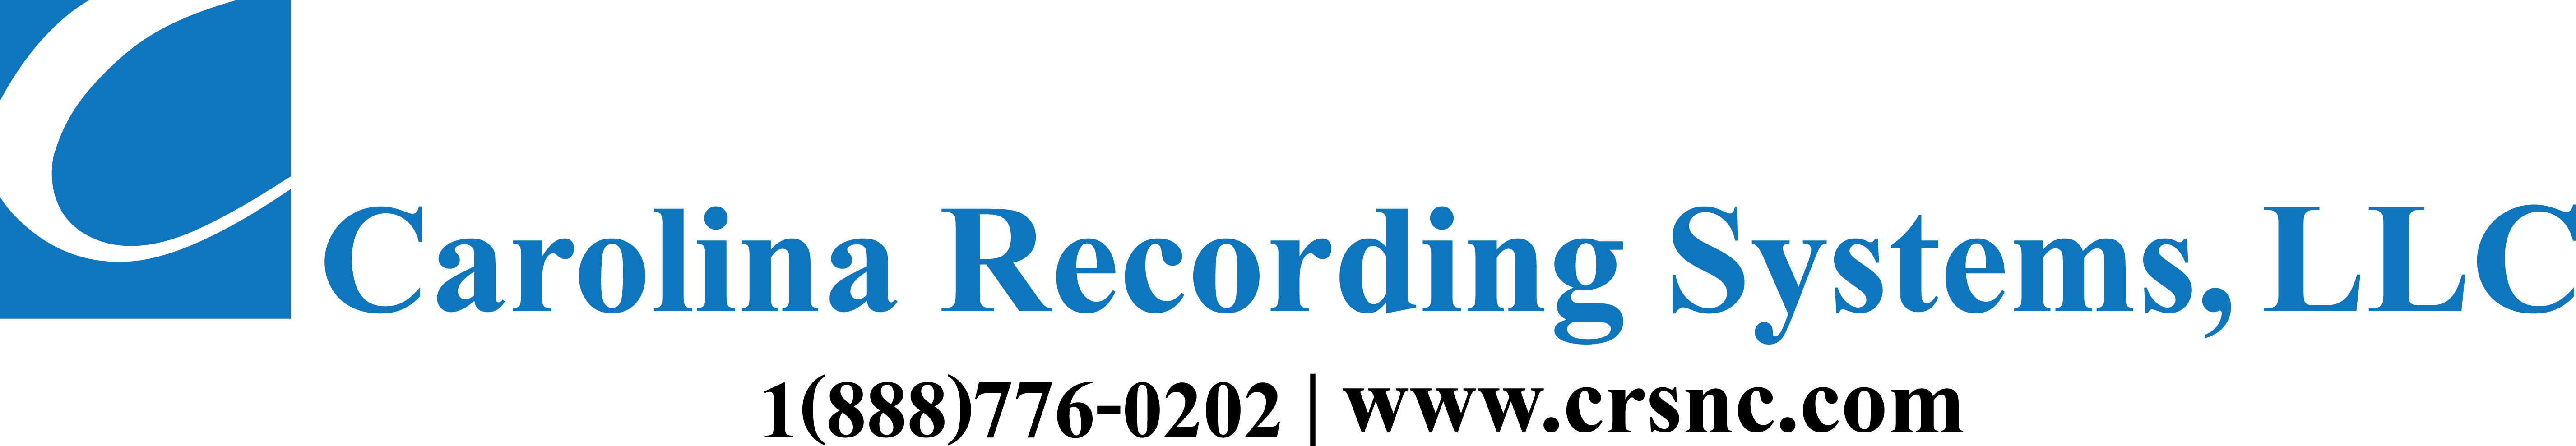 Carolina Recording Systems